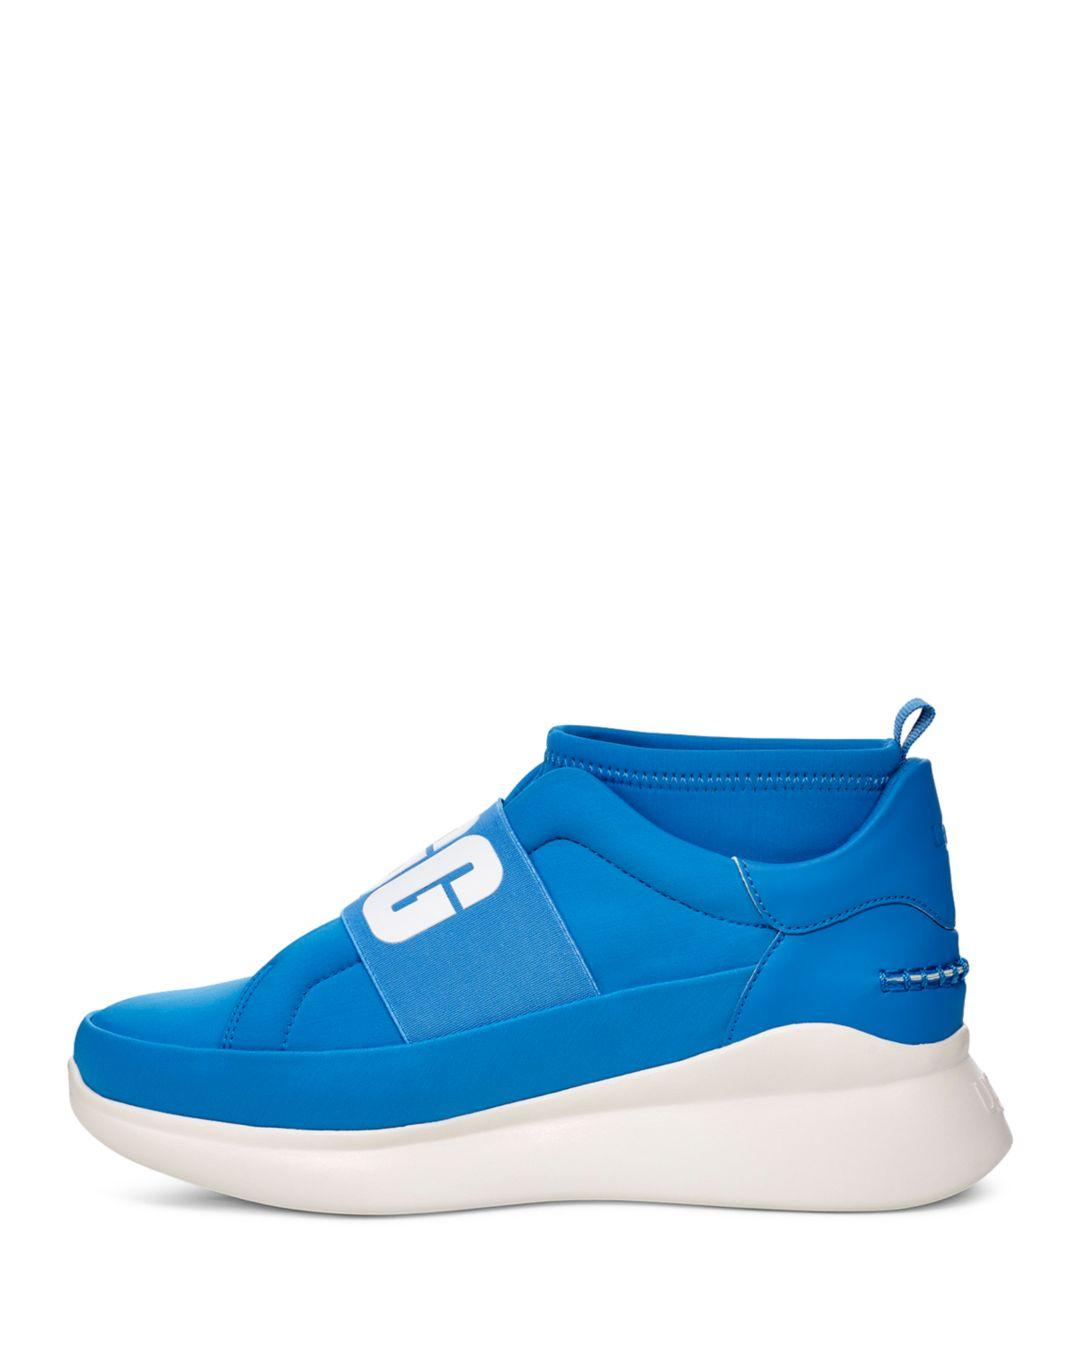 UGG Suede Women's Neutra Neon Sneakers in Neon Blue (Blue) - Lyst